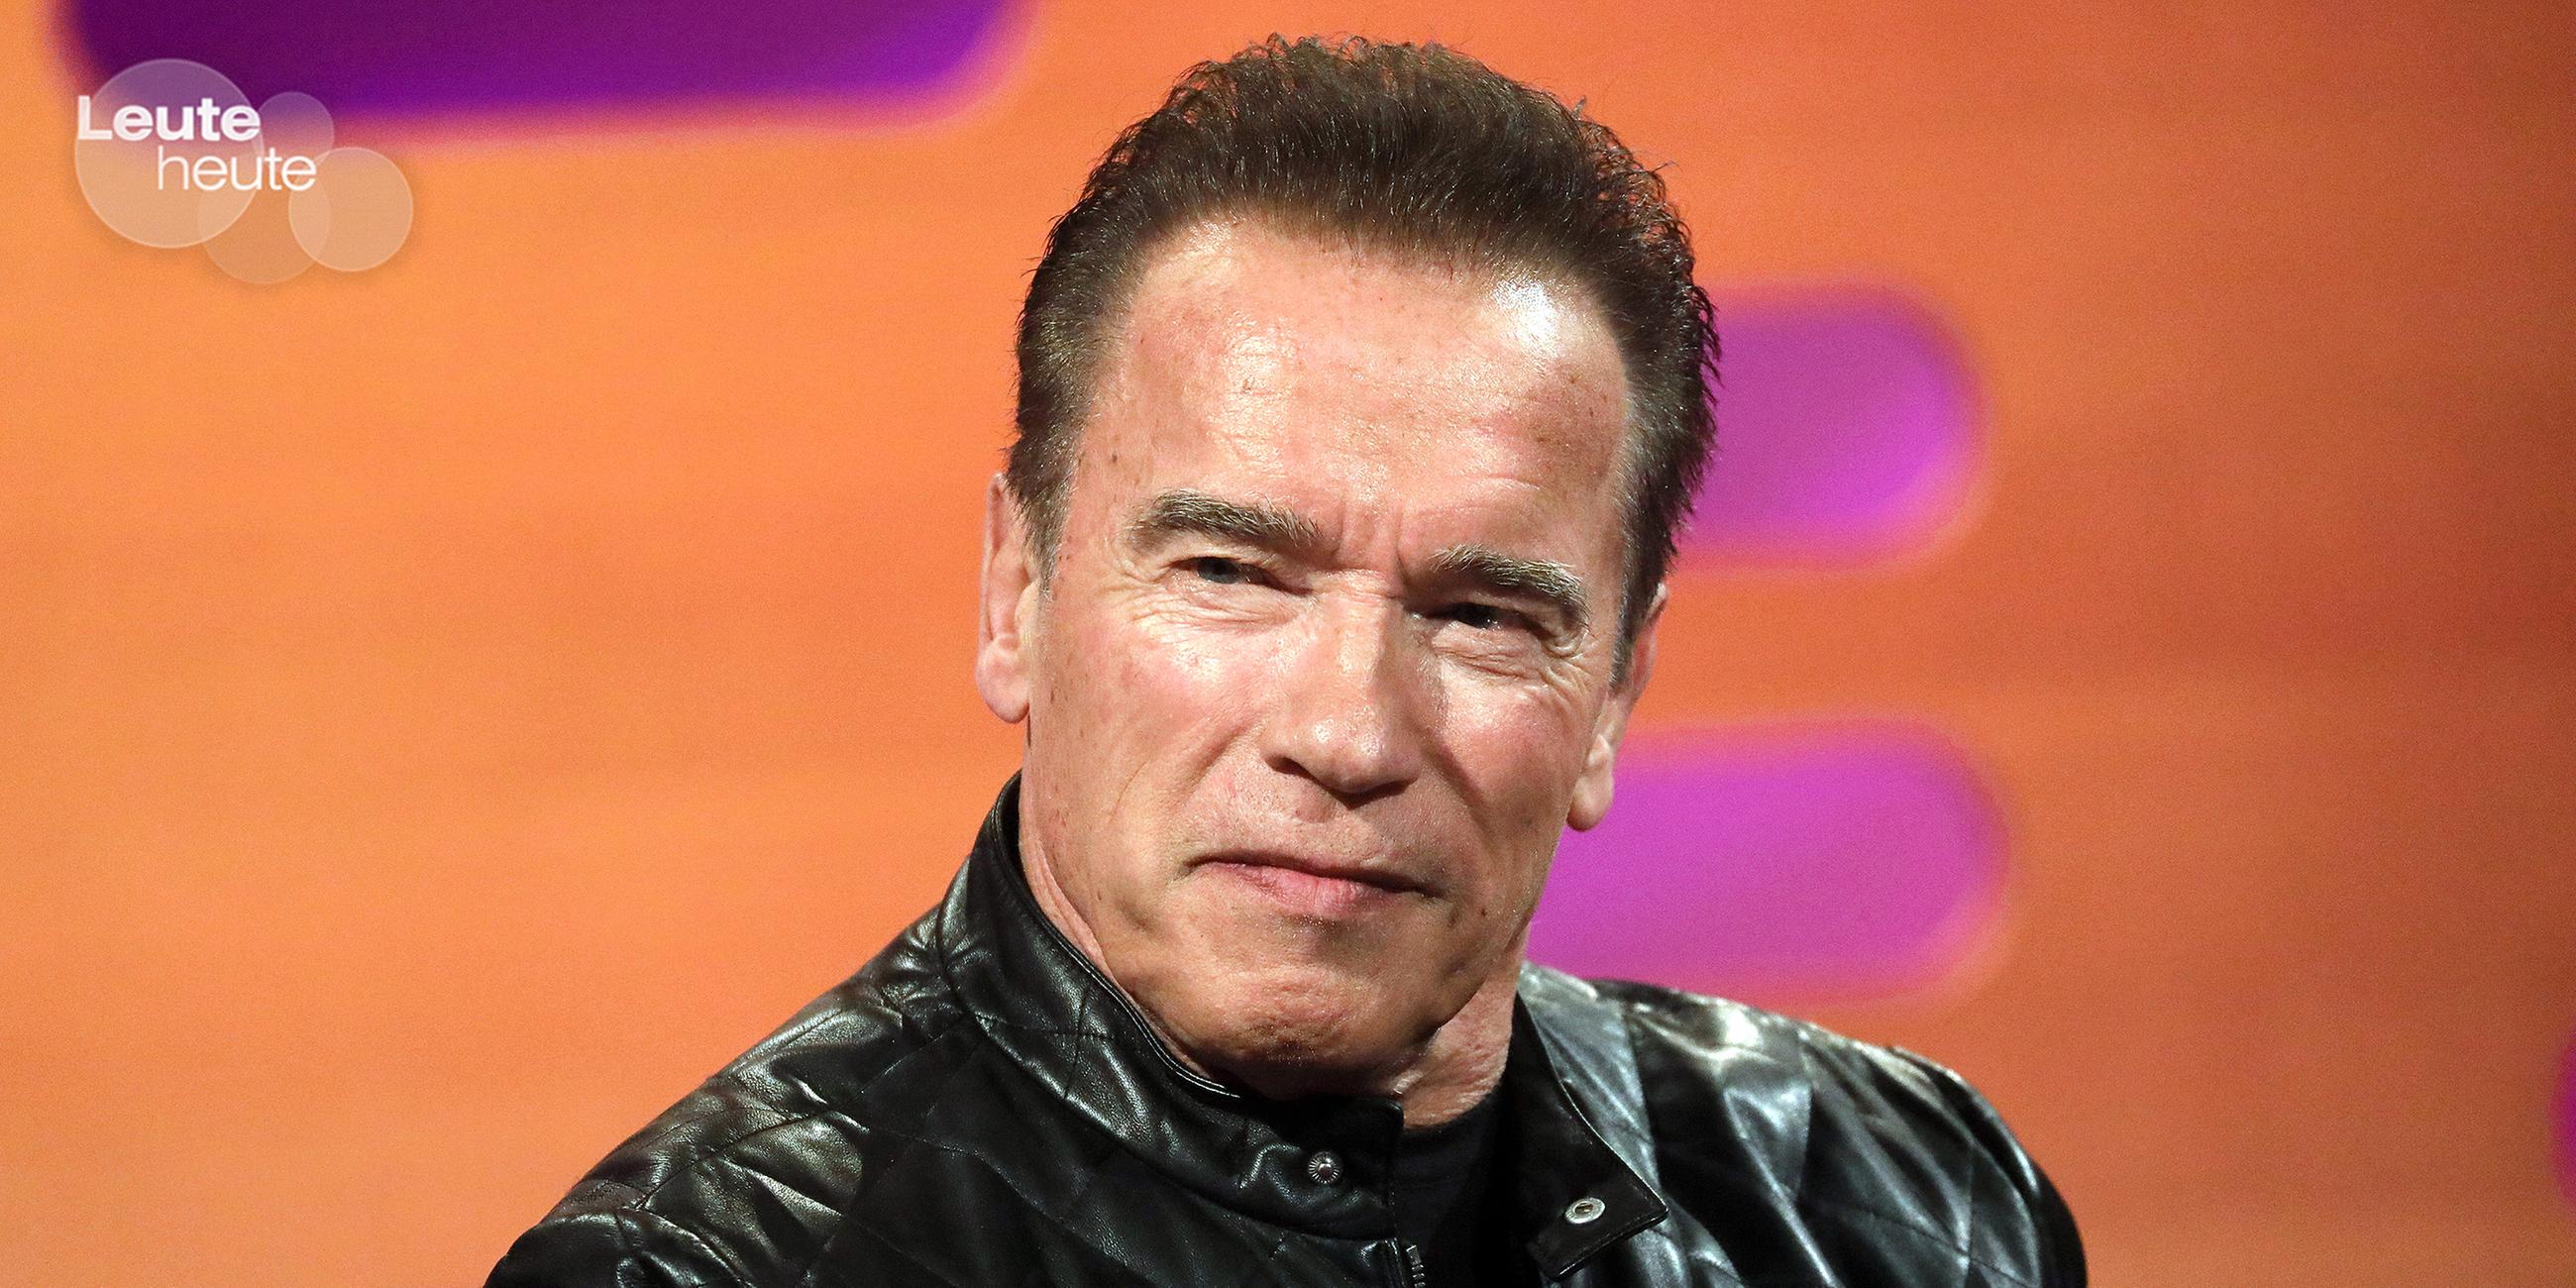 Bodybuilder, Schauspieler, Gouverneur Arnold Schwarzenegger wird 75 Jahre alt. Aber ans Aufhören denkt der Action-Star nicht. Zur Zeit dreht er eine Serie für Netflix.